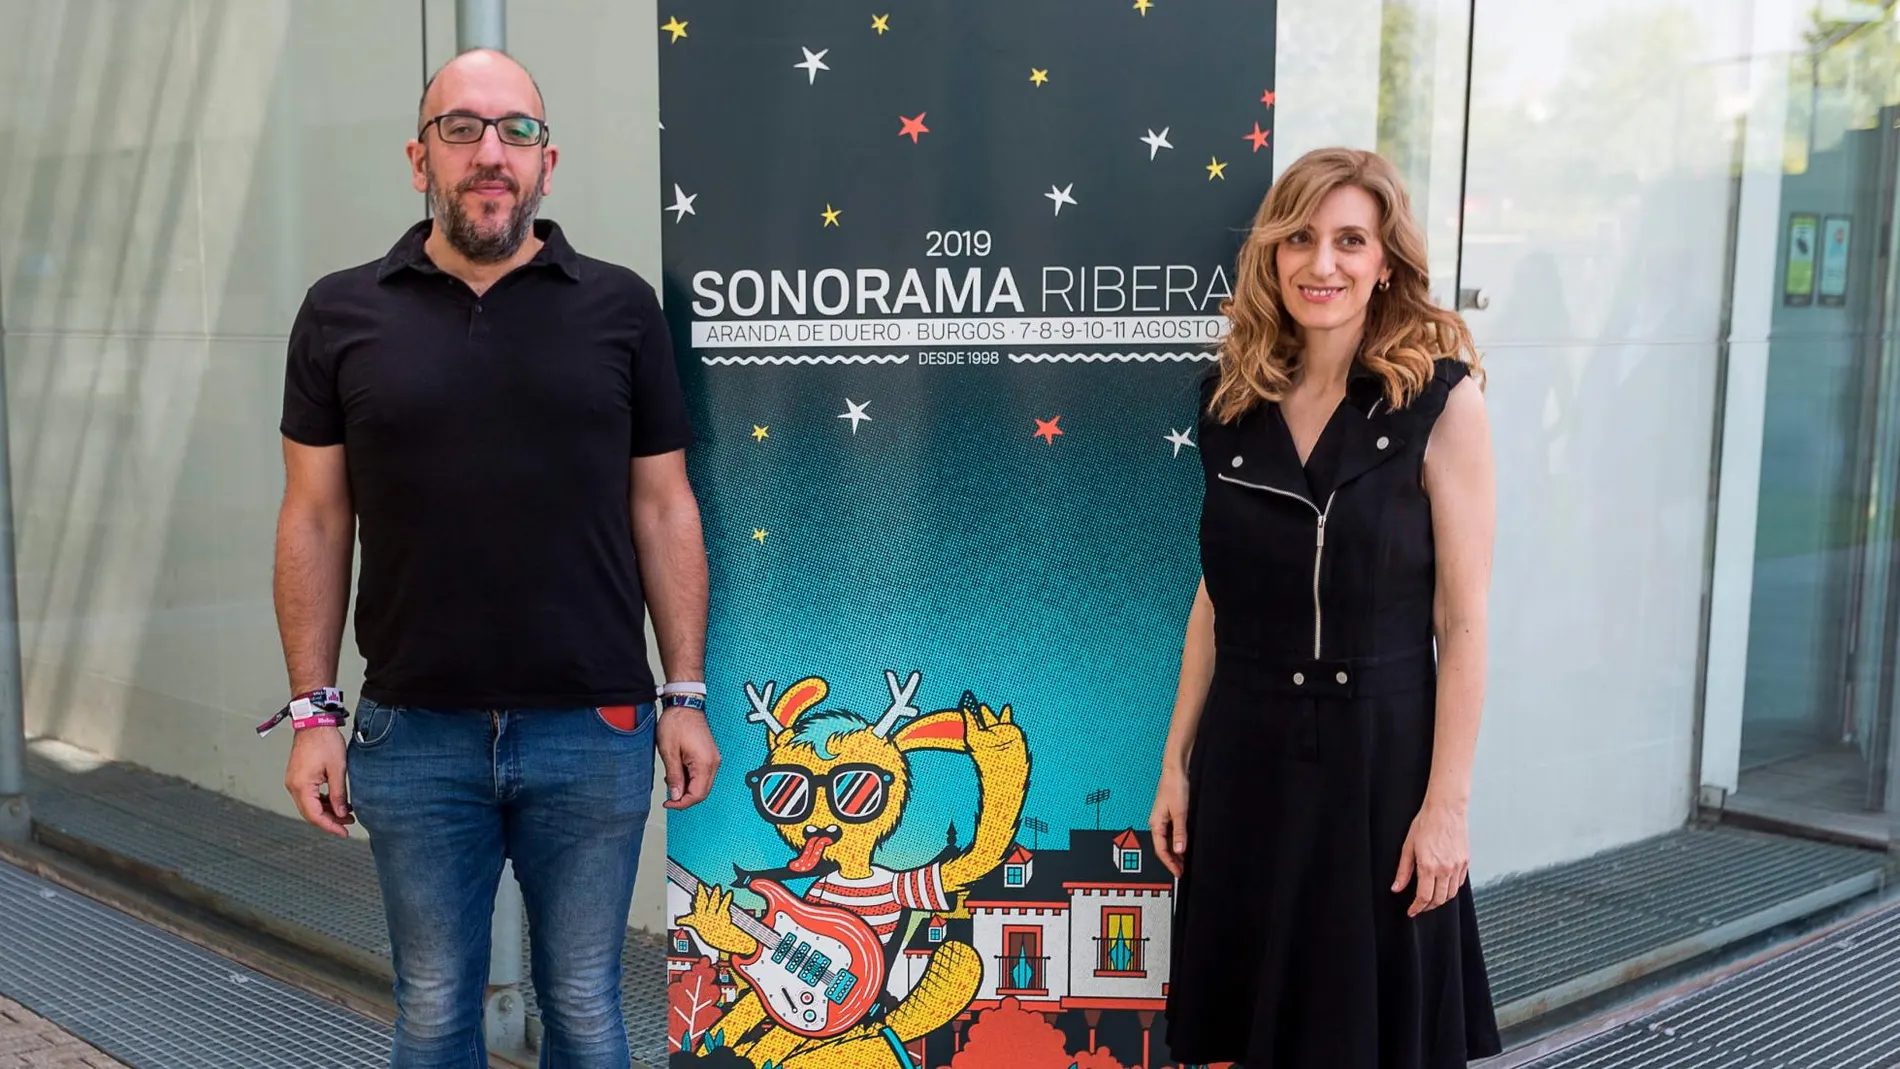 La directora general de Políticas Culturales, Mar Sancho, presenta el Festival Sonorama Ribera 2019 junto a su responsable, Javier Ajenjo